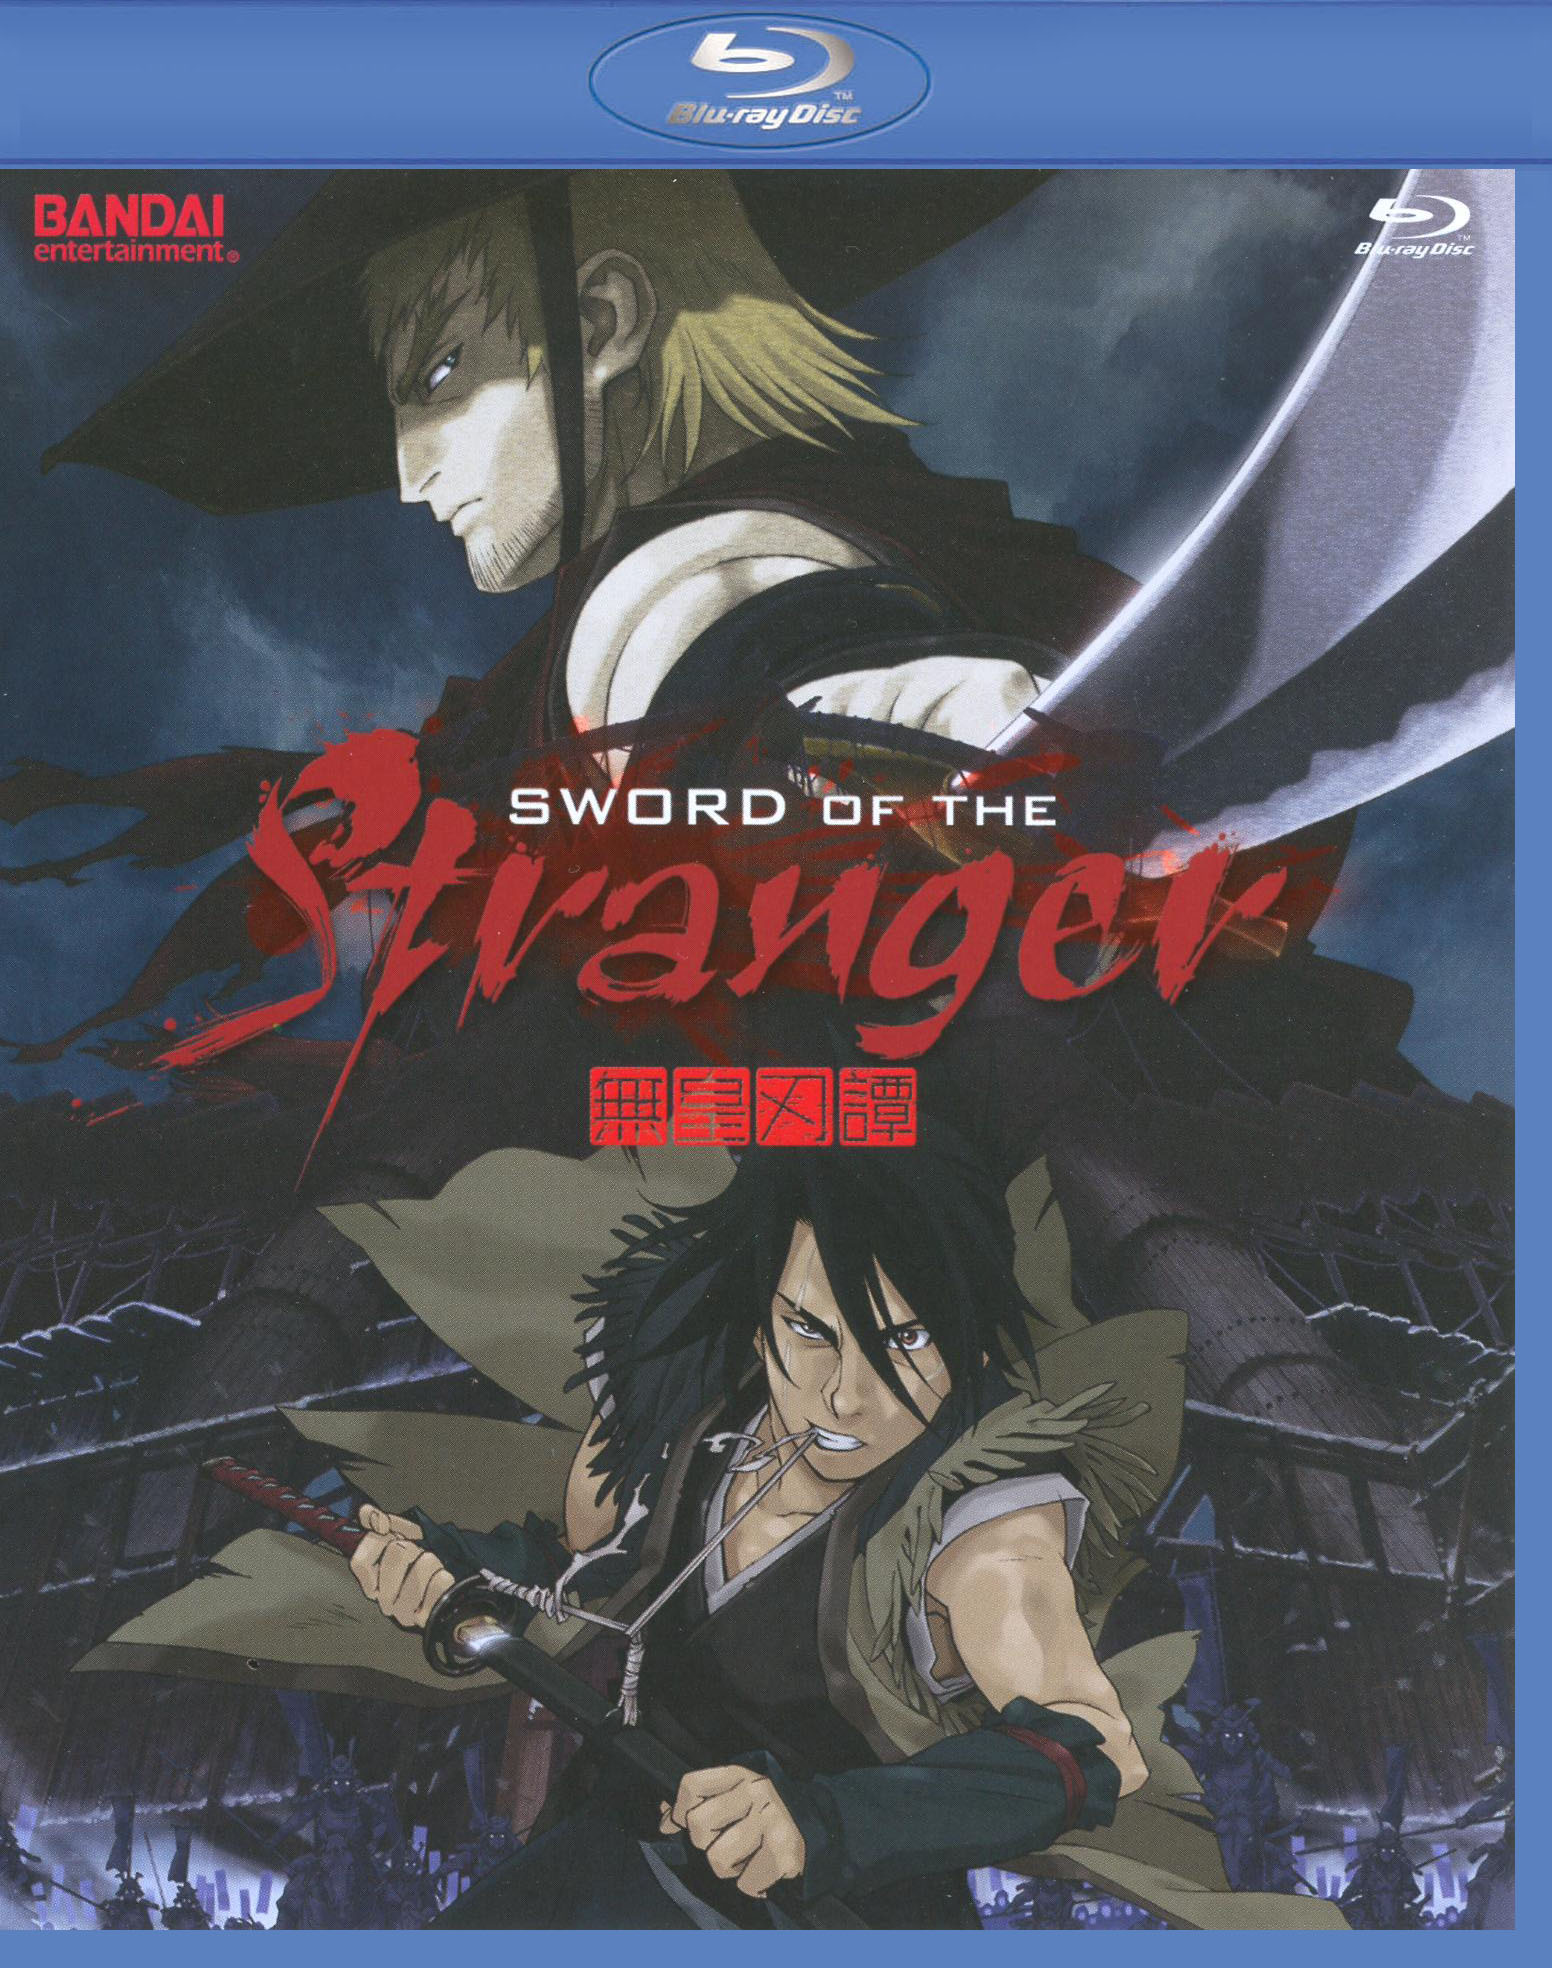 Sword of the Stranger Blu-ray/DVD